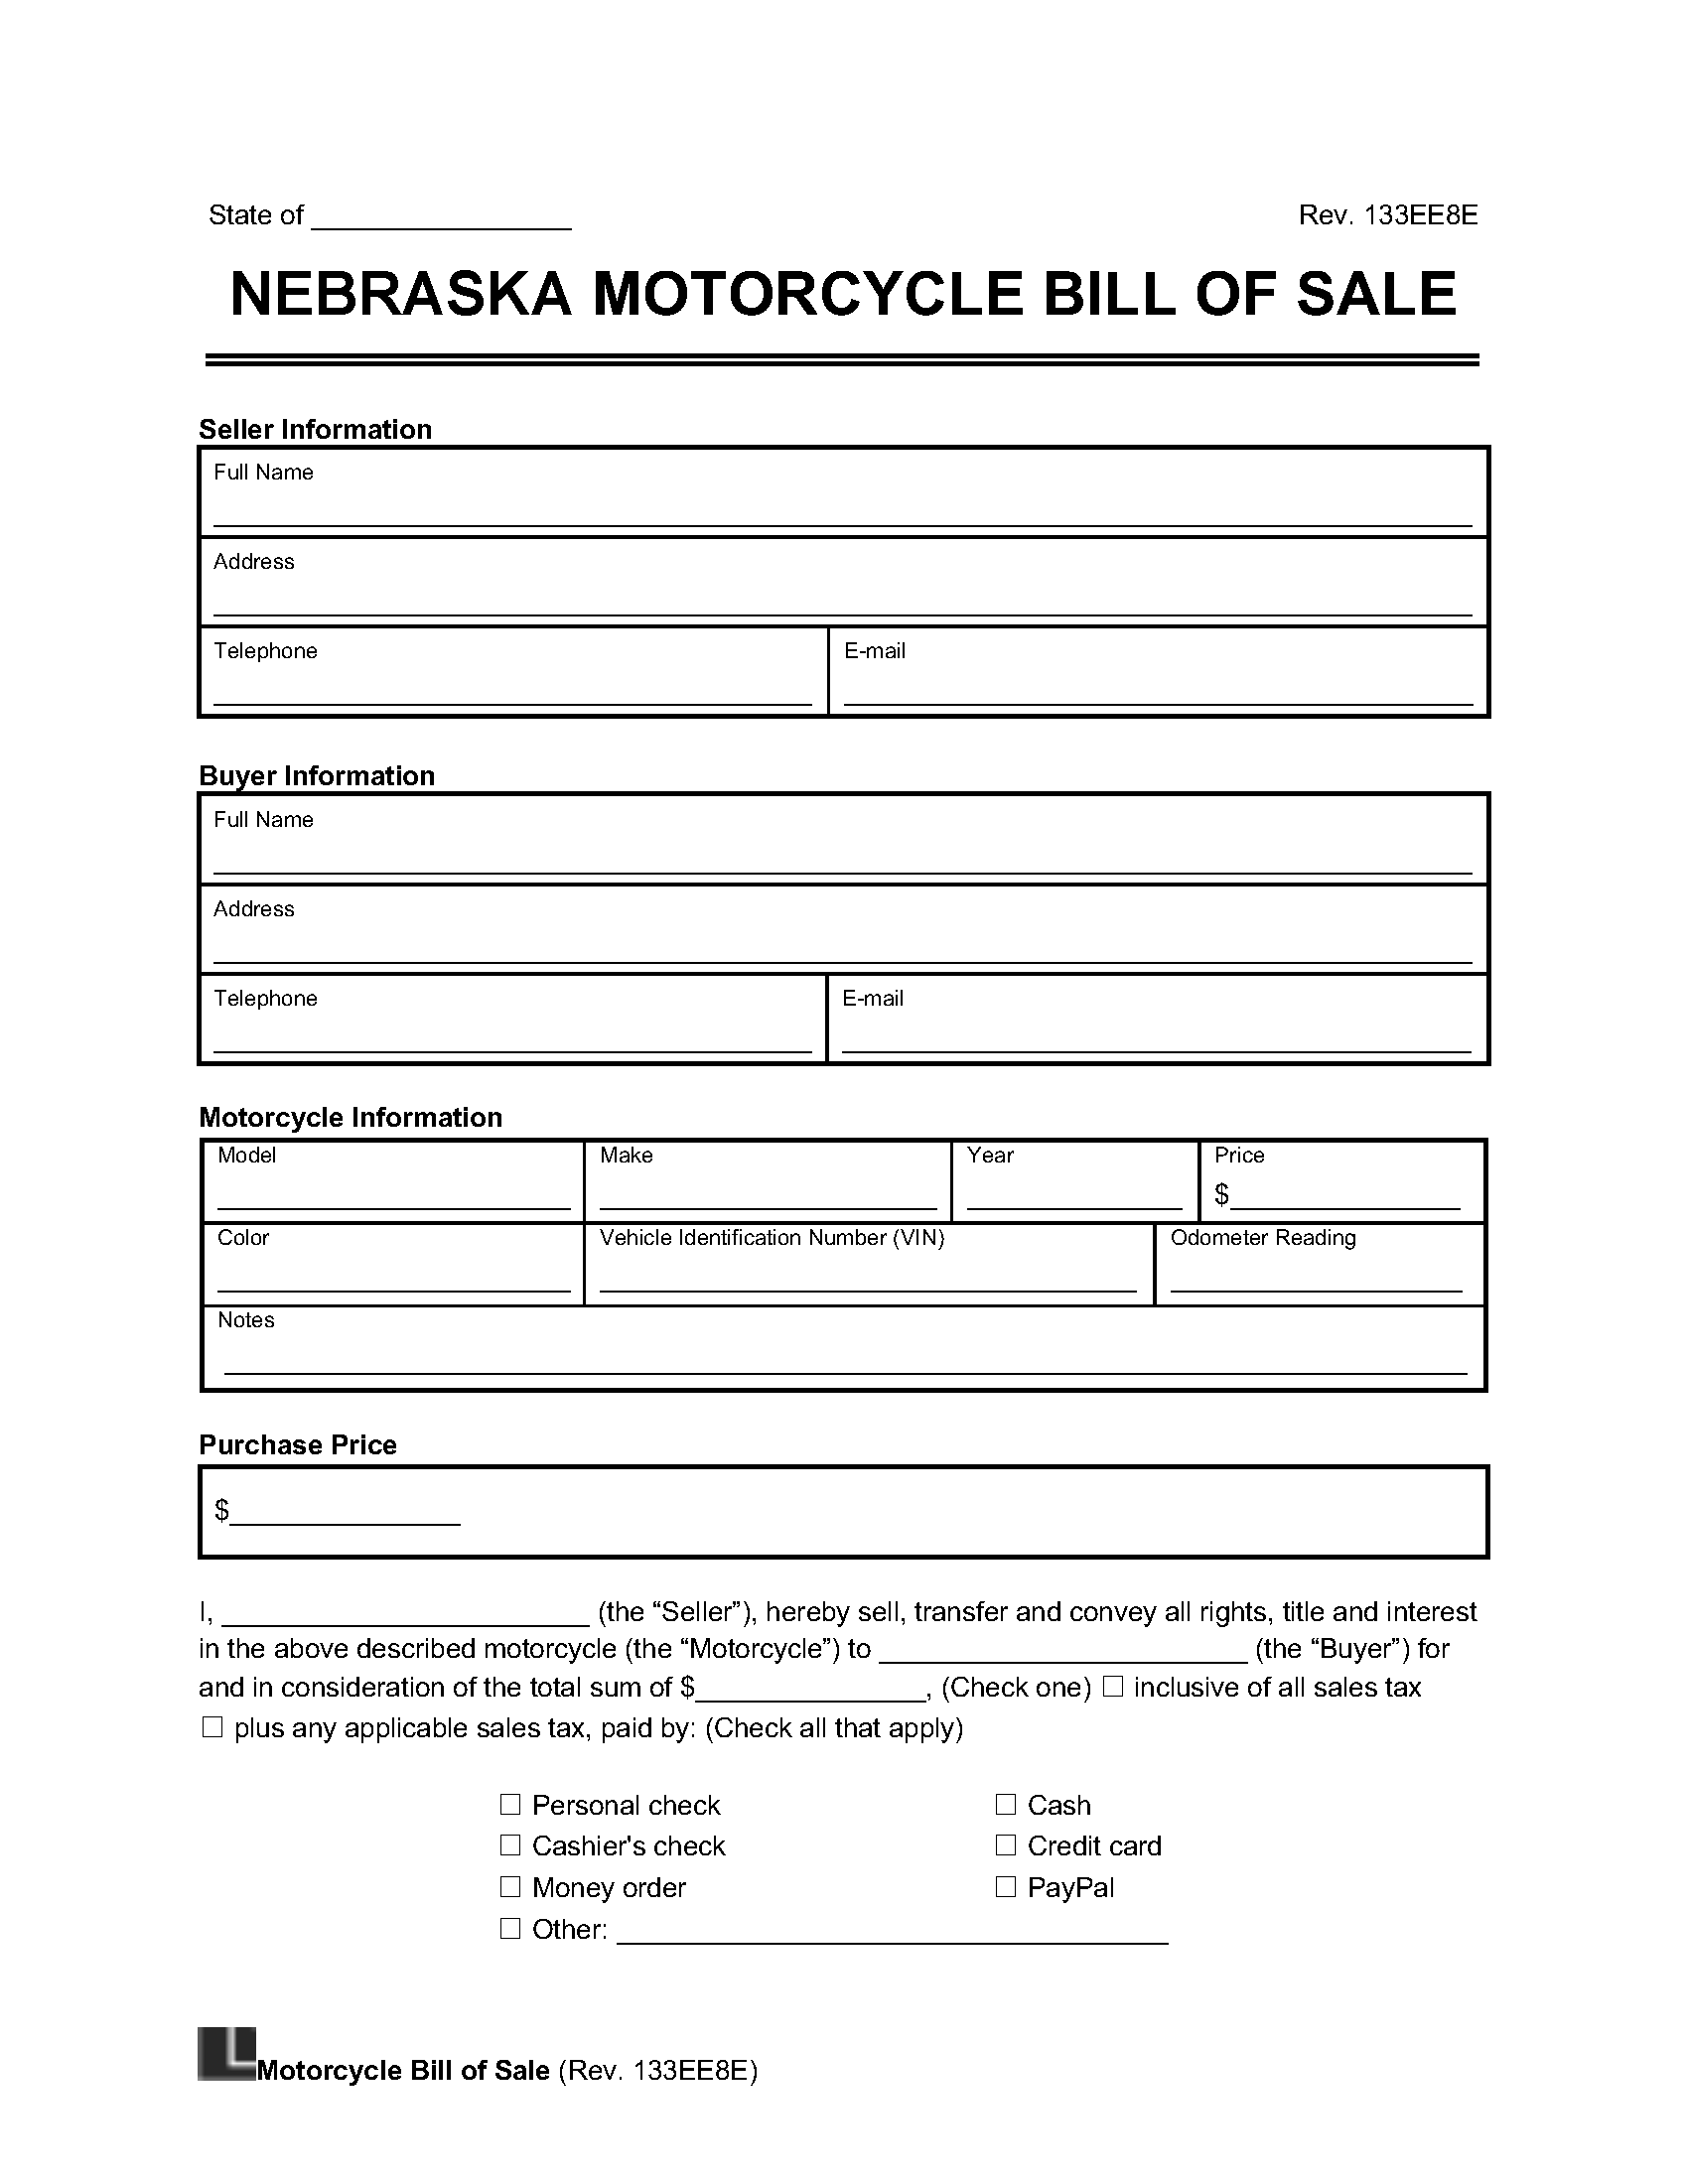 nebraska motorcycle bill of sale